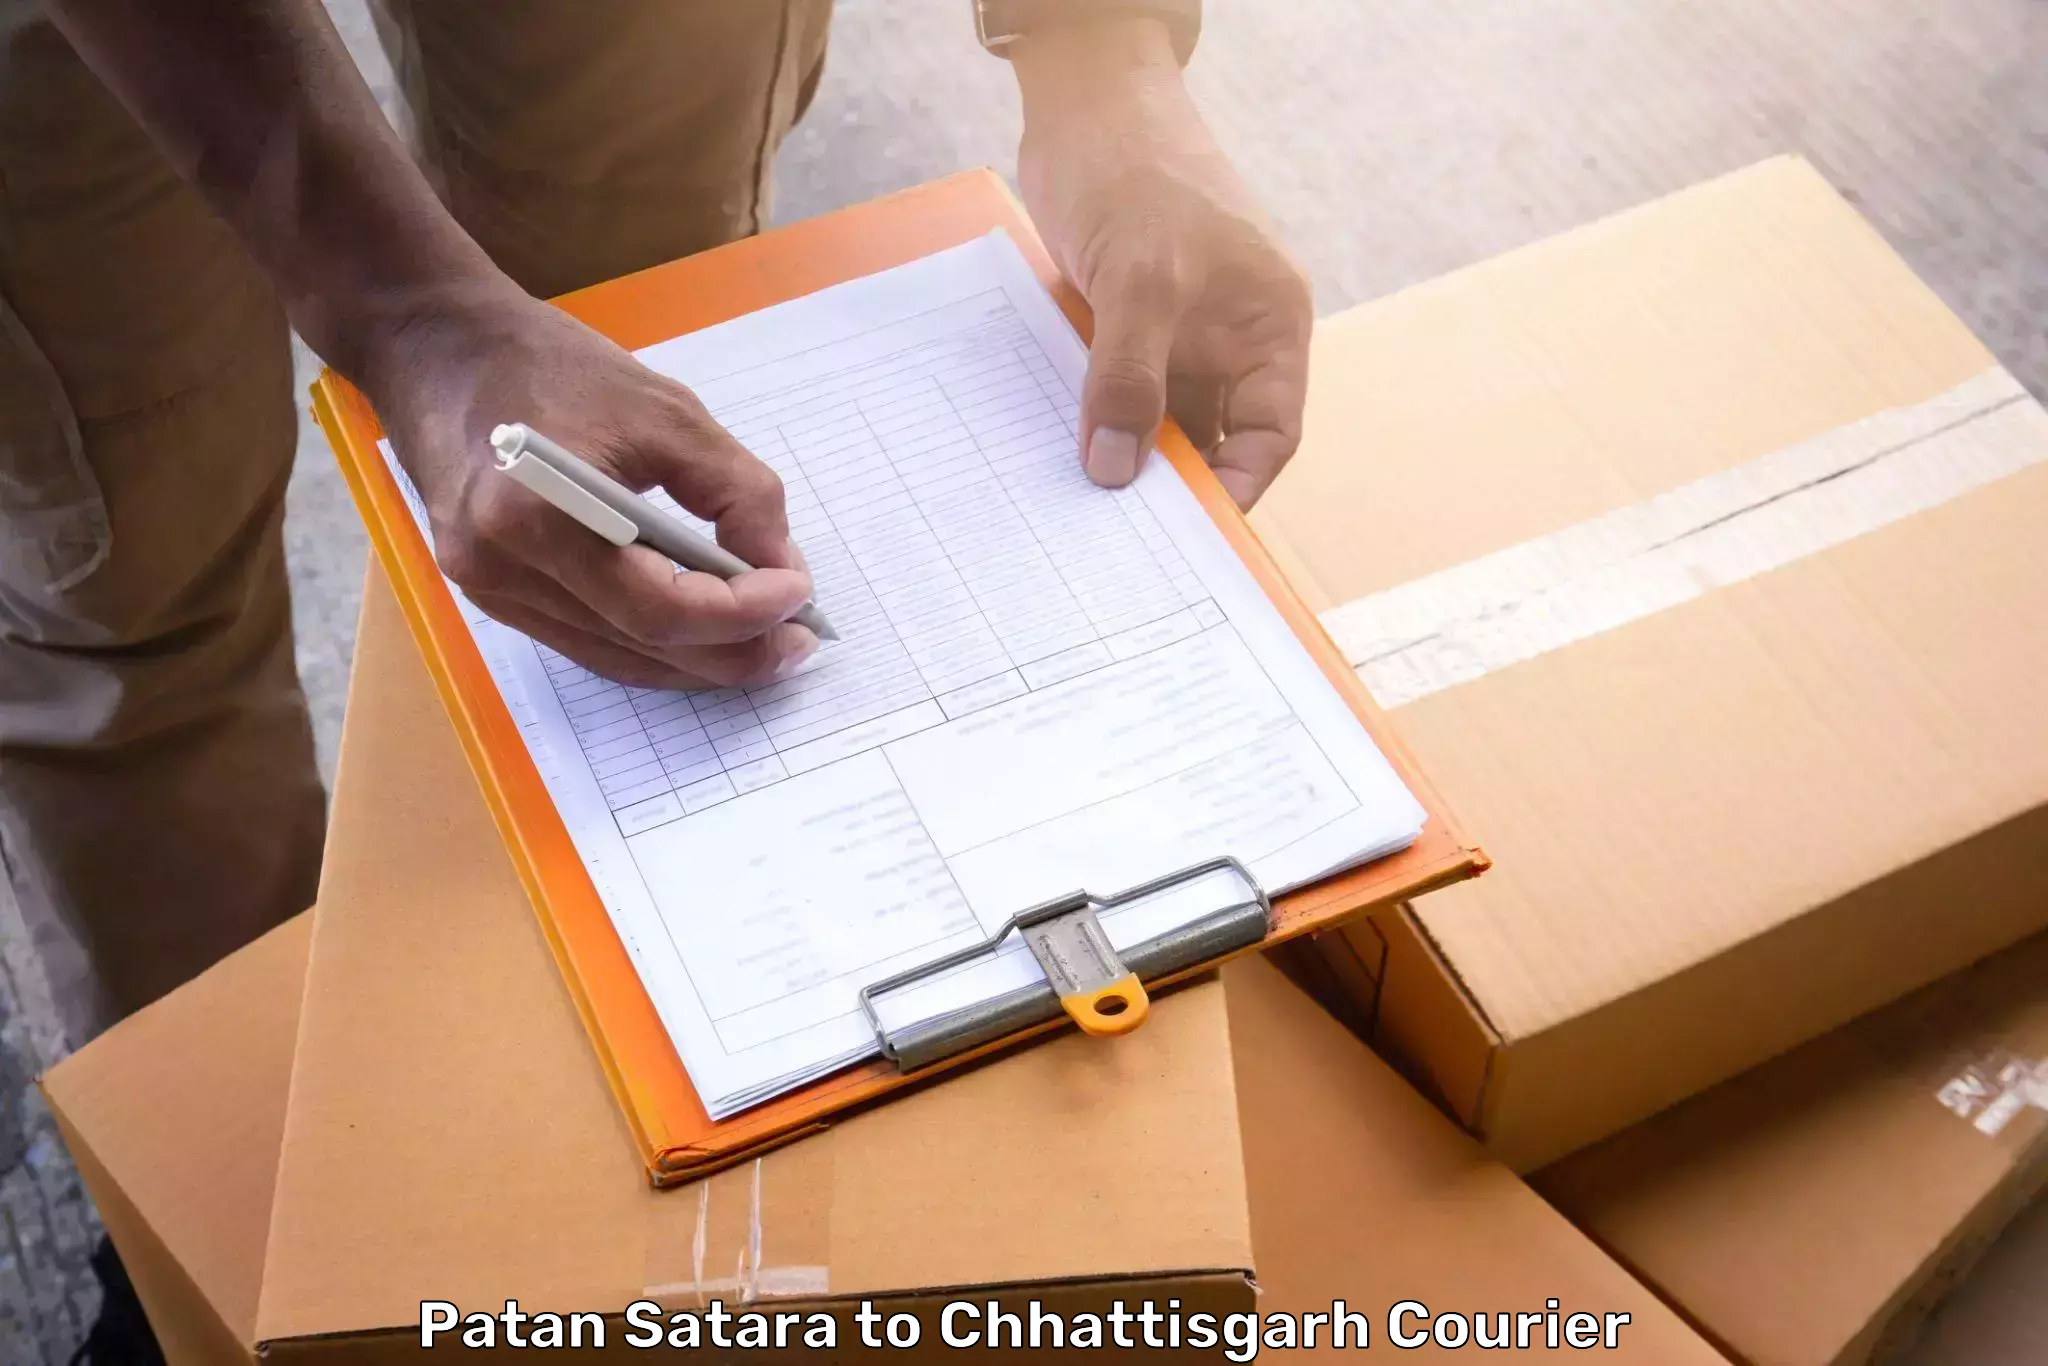 Baggage shipping service Patan Satara to Bargidih